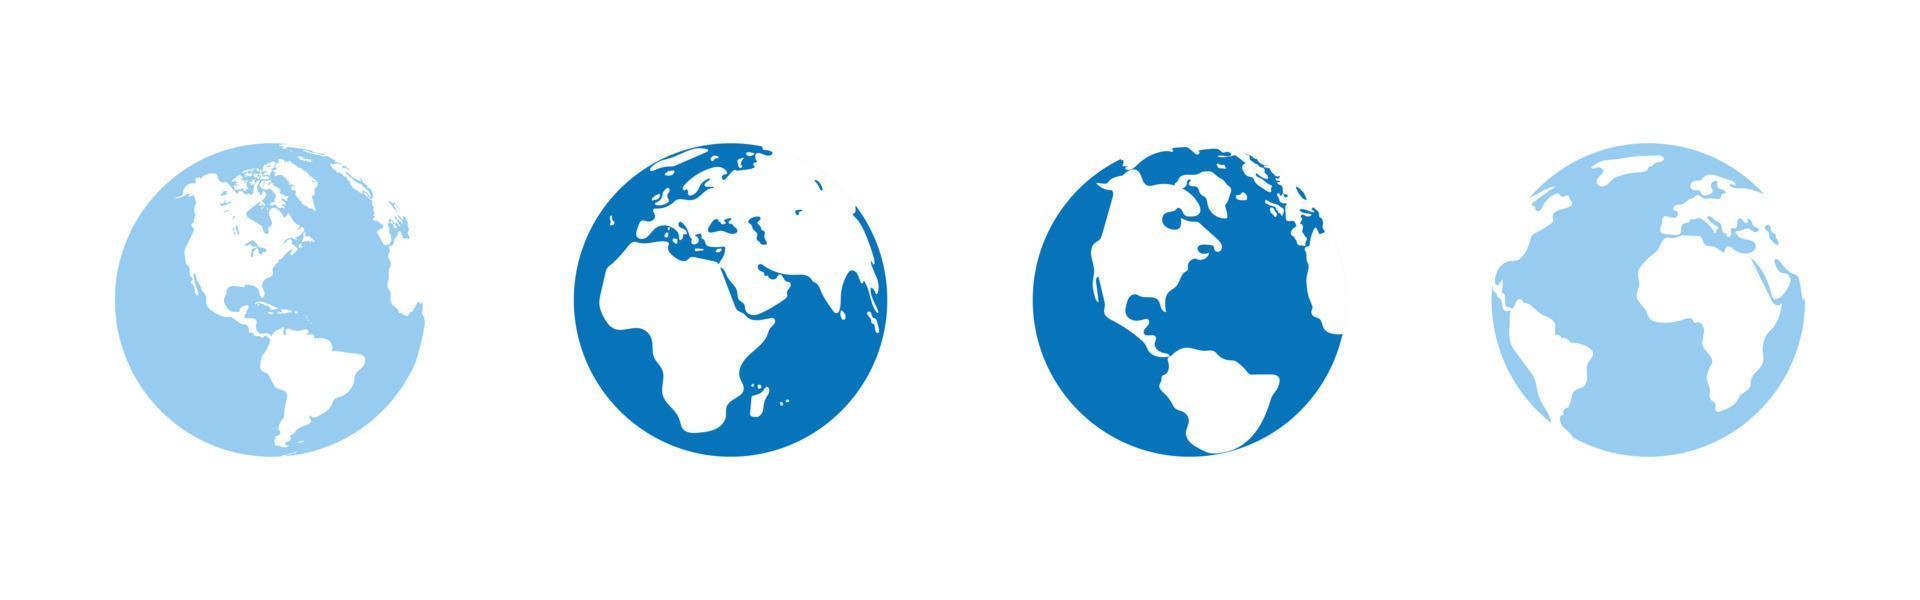 globo, planeta tierra con contornos de continentes continentes norte America, sur America, África, eurasia, Europa. geográfico objetos, iconos, logos para diseño, decoración. vector ilustración